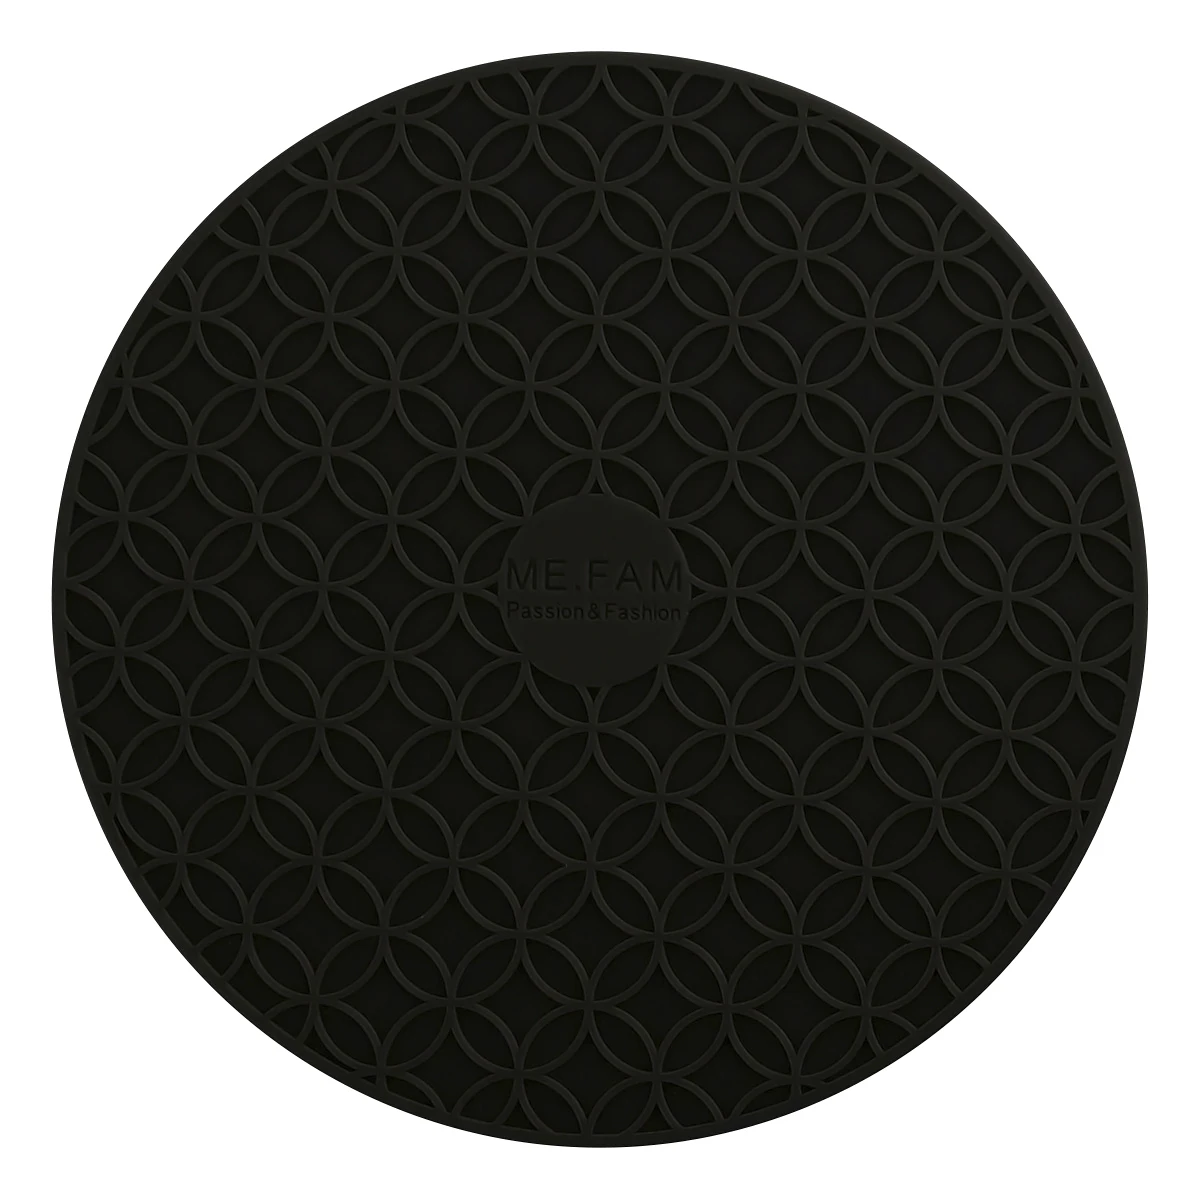 ME. FAM 1 шт. 16 см круглый силиконовый коврик для воссоединения нескользящий теплоизоляционный коврик для тарелок для кухни, ресторана, офиса - Цвет: Black 1 Piece